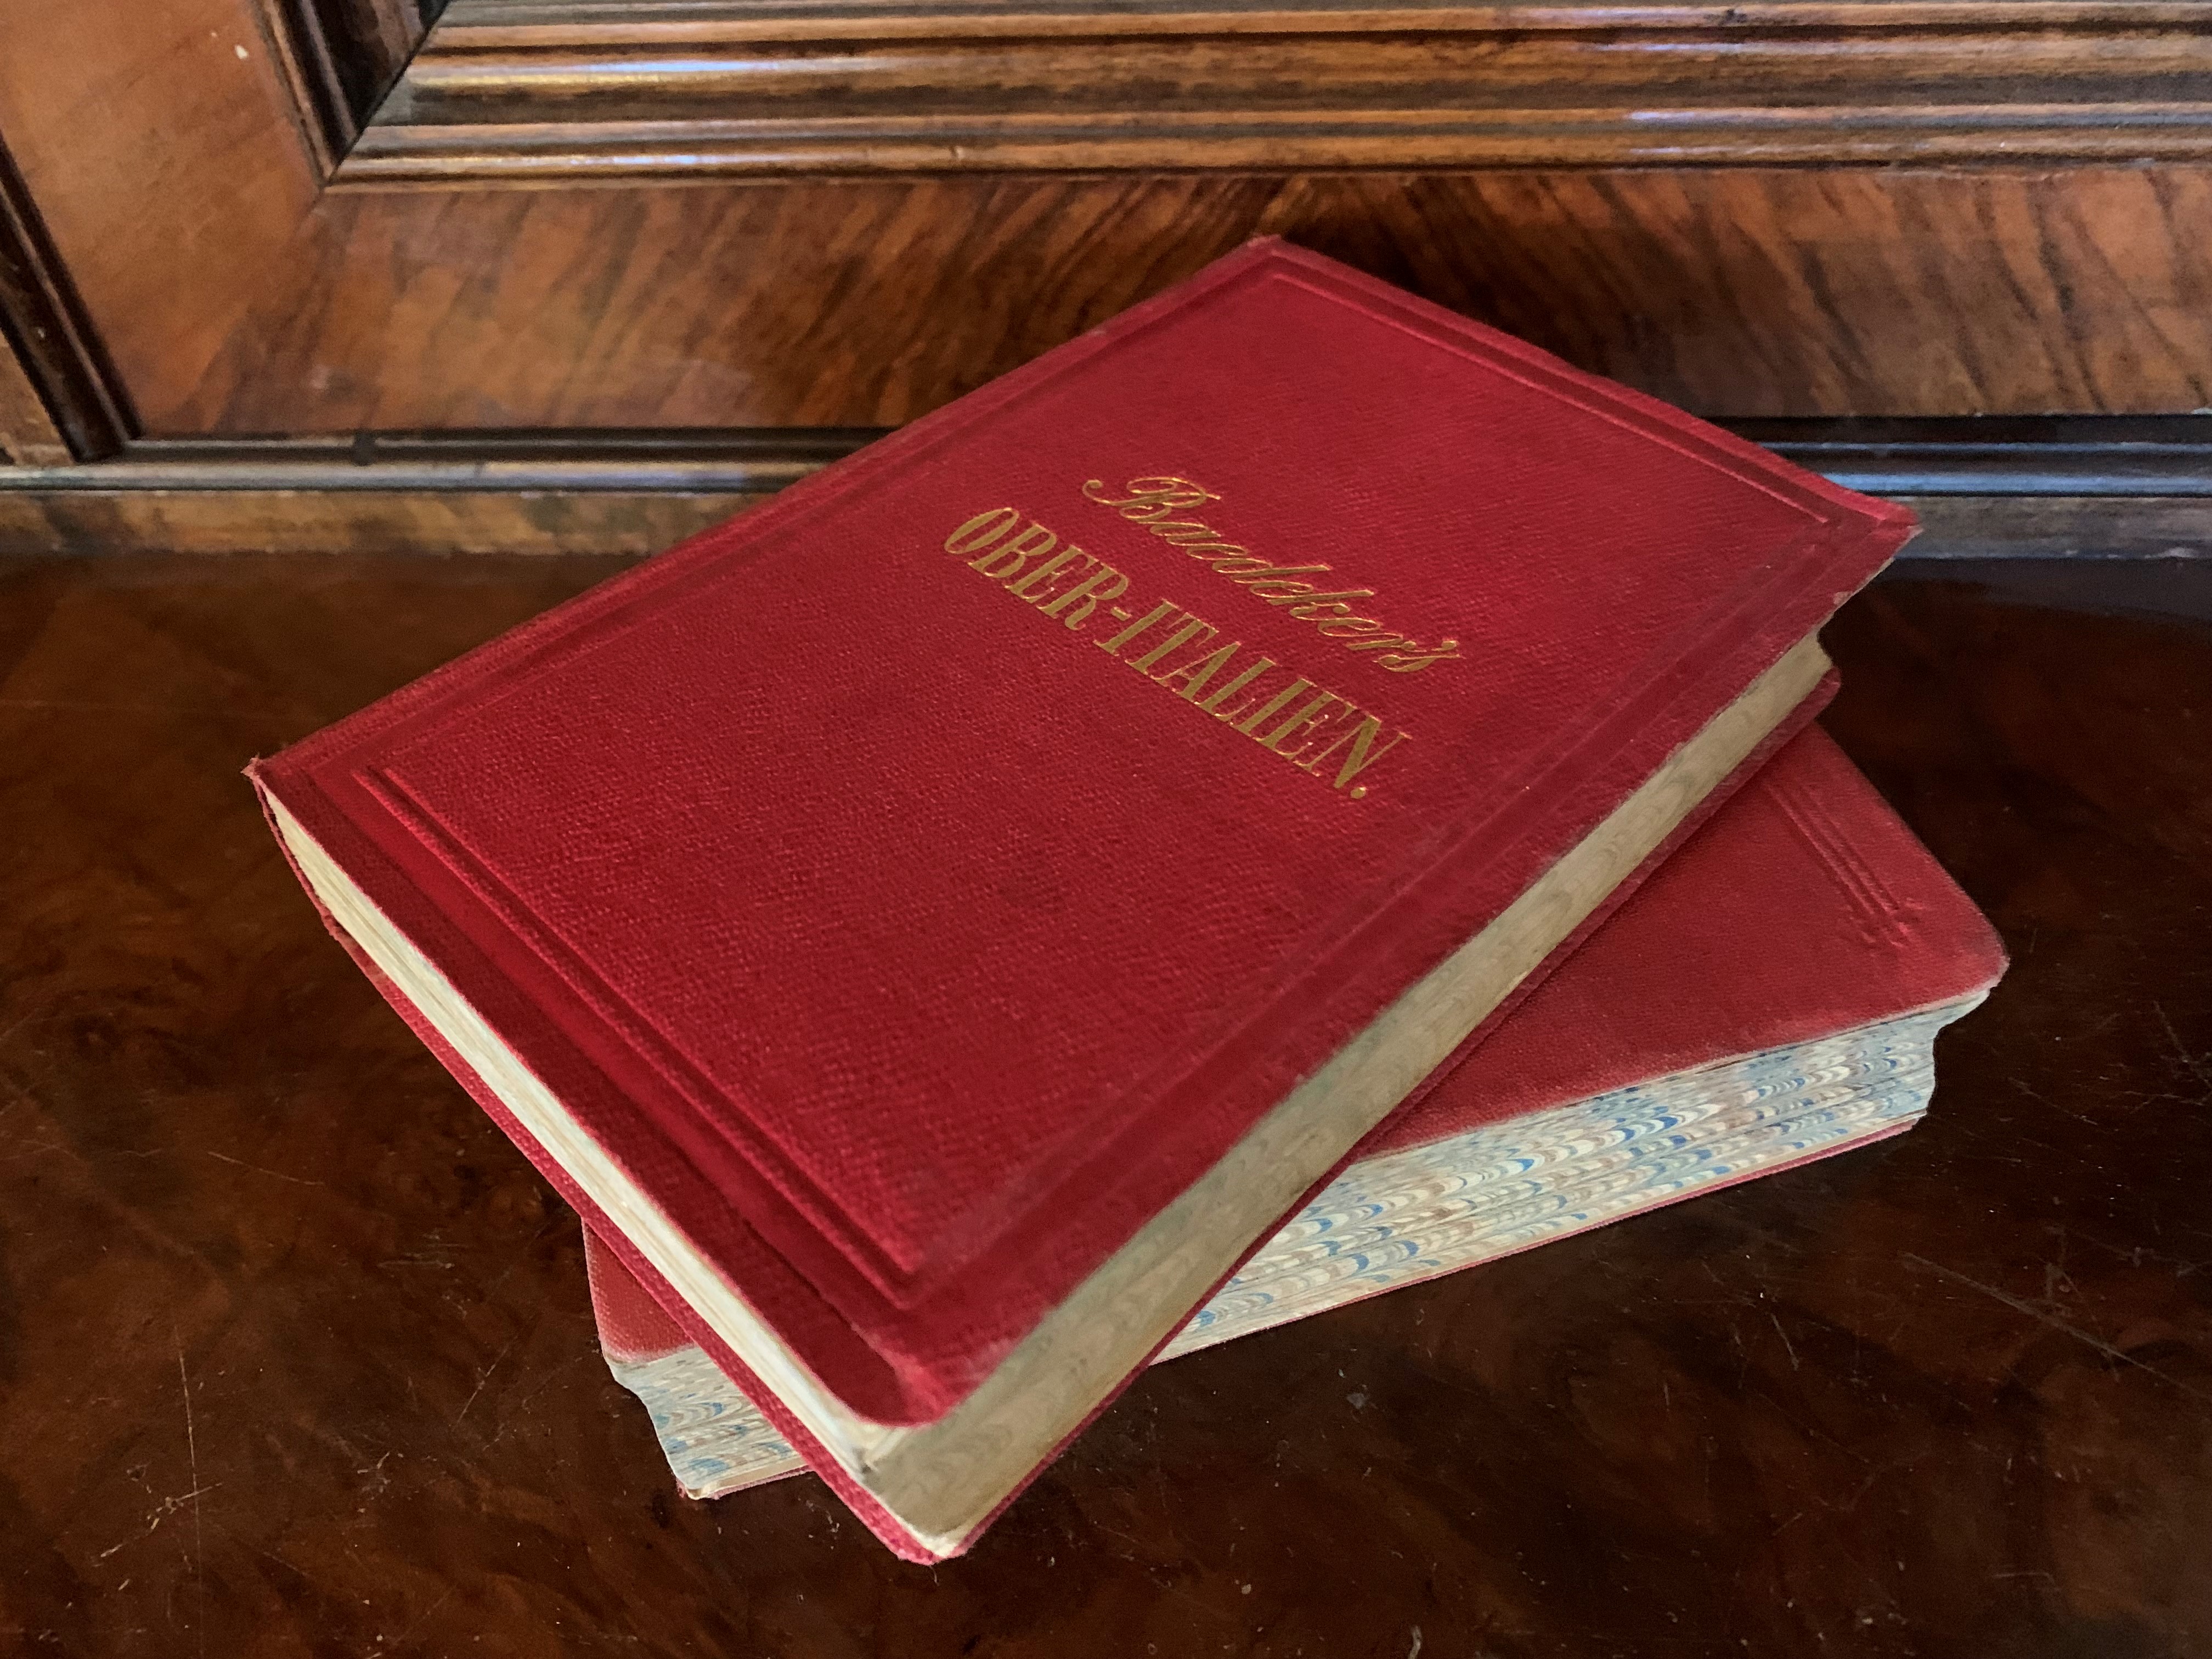 Två guideböcker ur med röda pärmar från Baedekers förlag liggande ovanpå en möbel i mörkt trä.